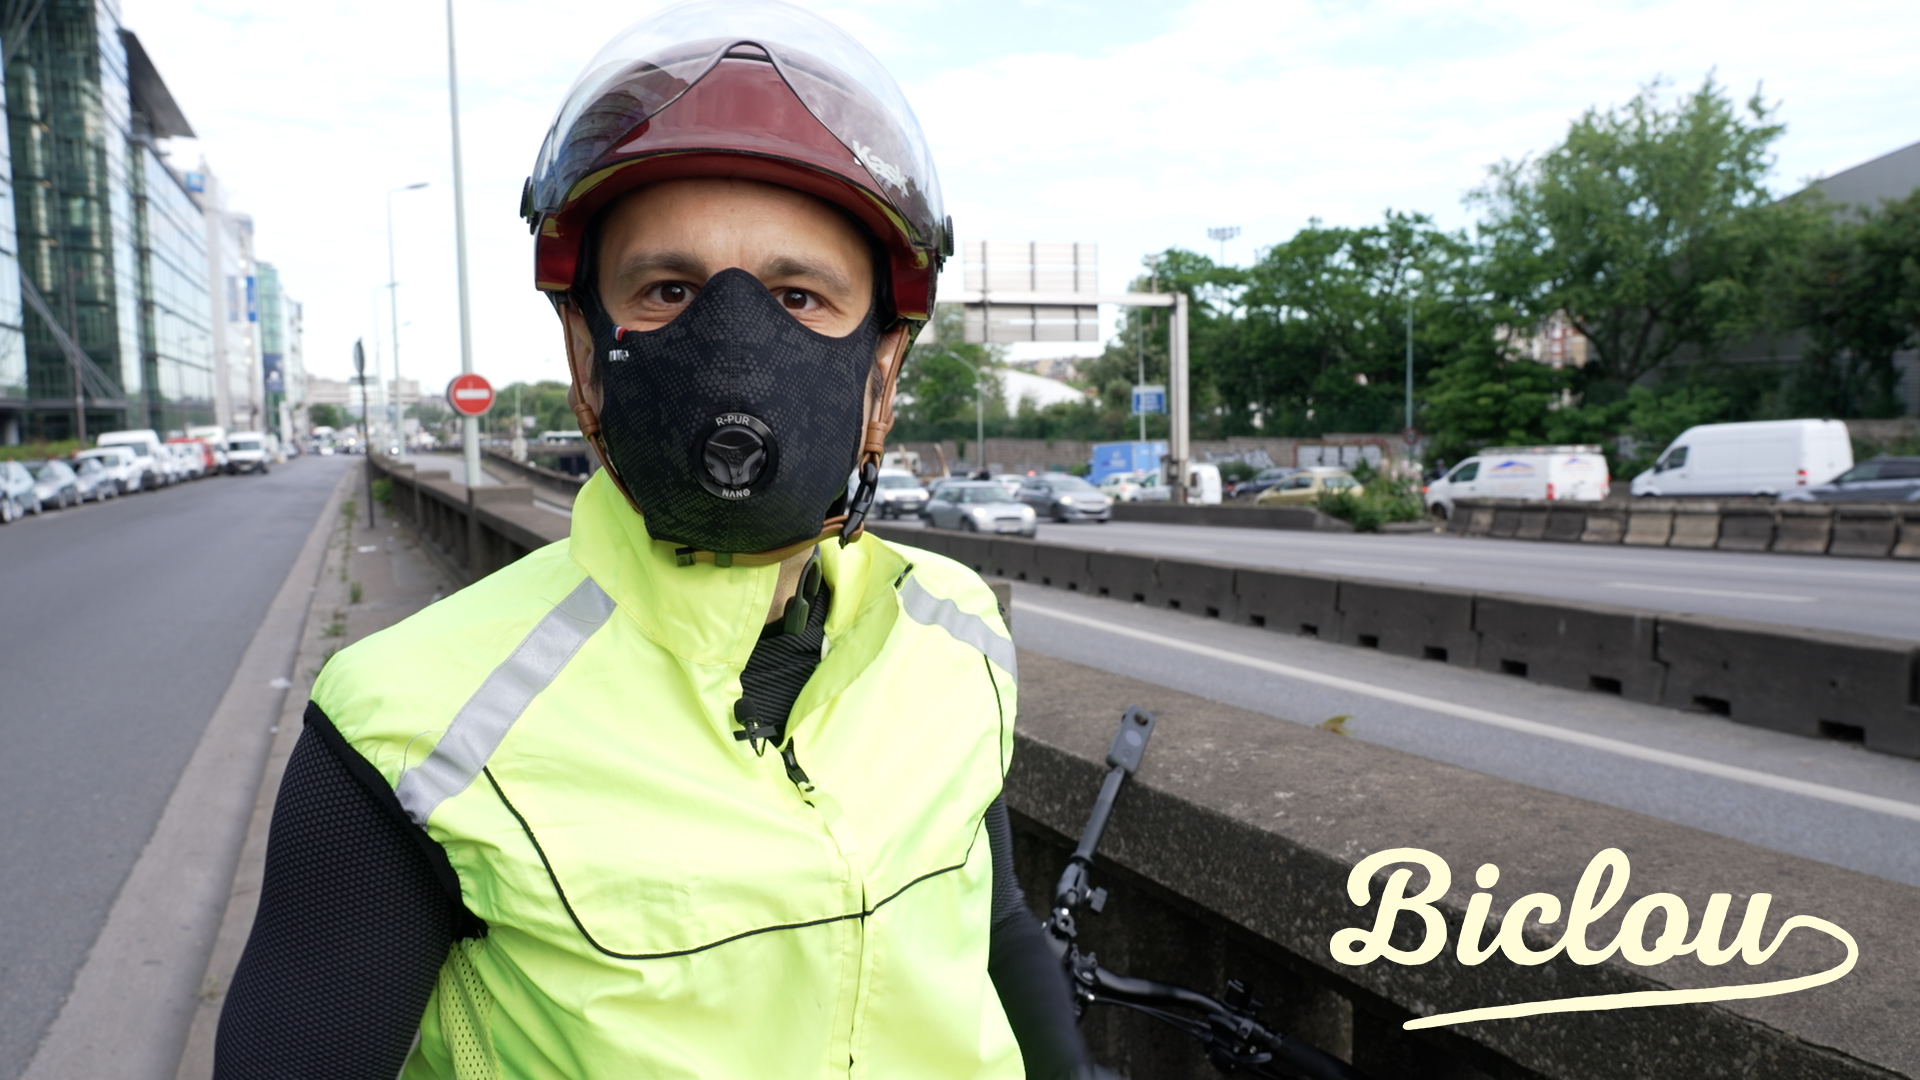 Cycliste équipé d'un masque anti-pollution